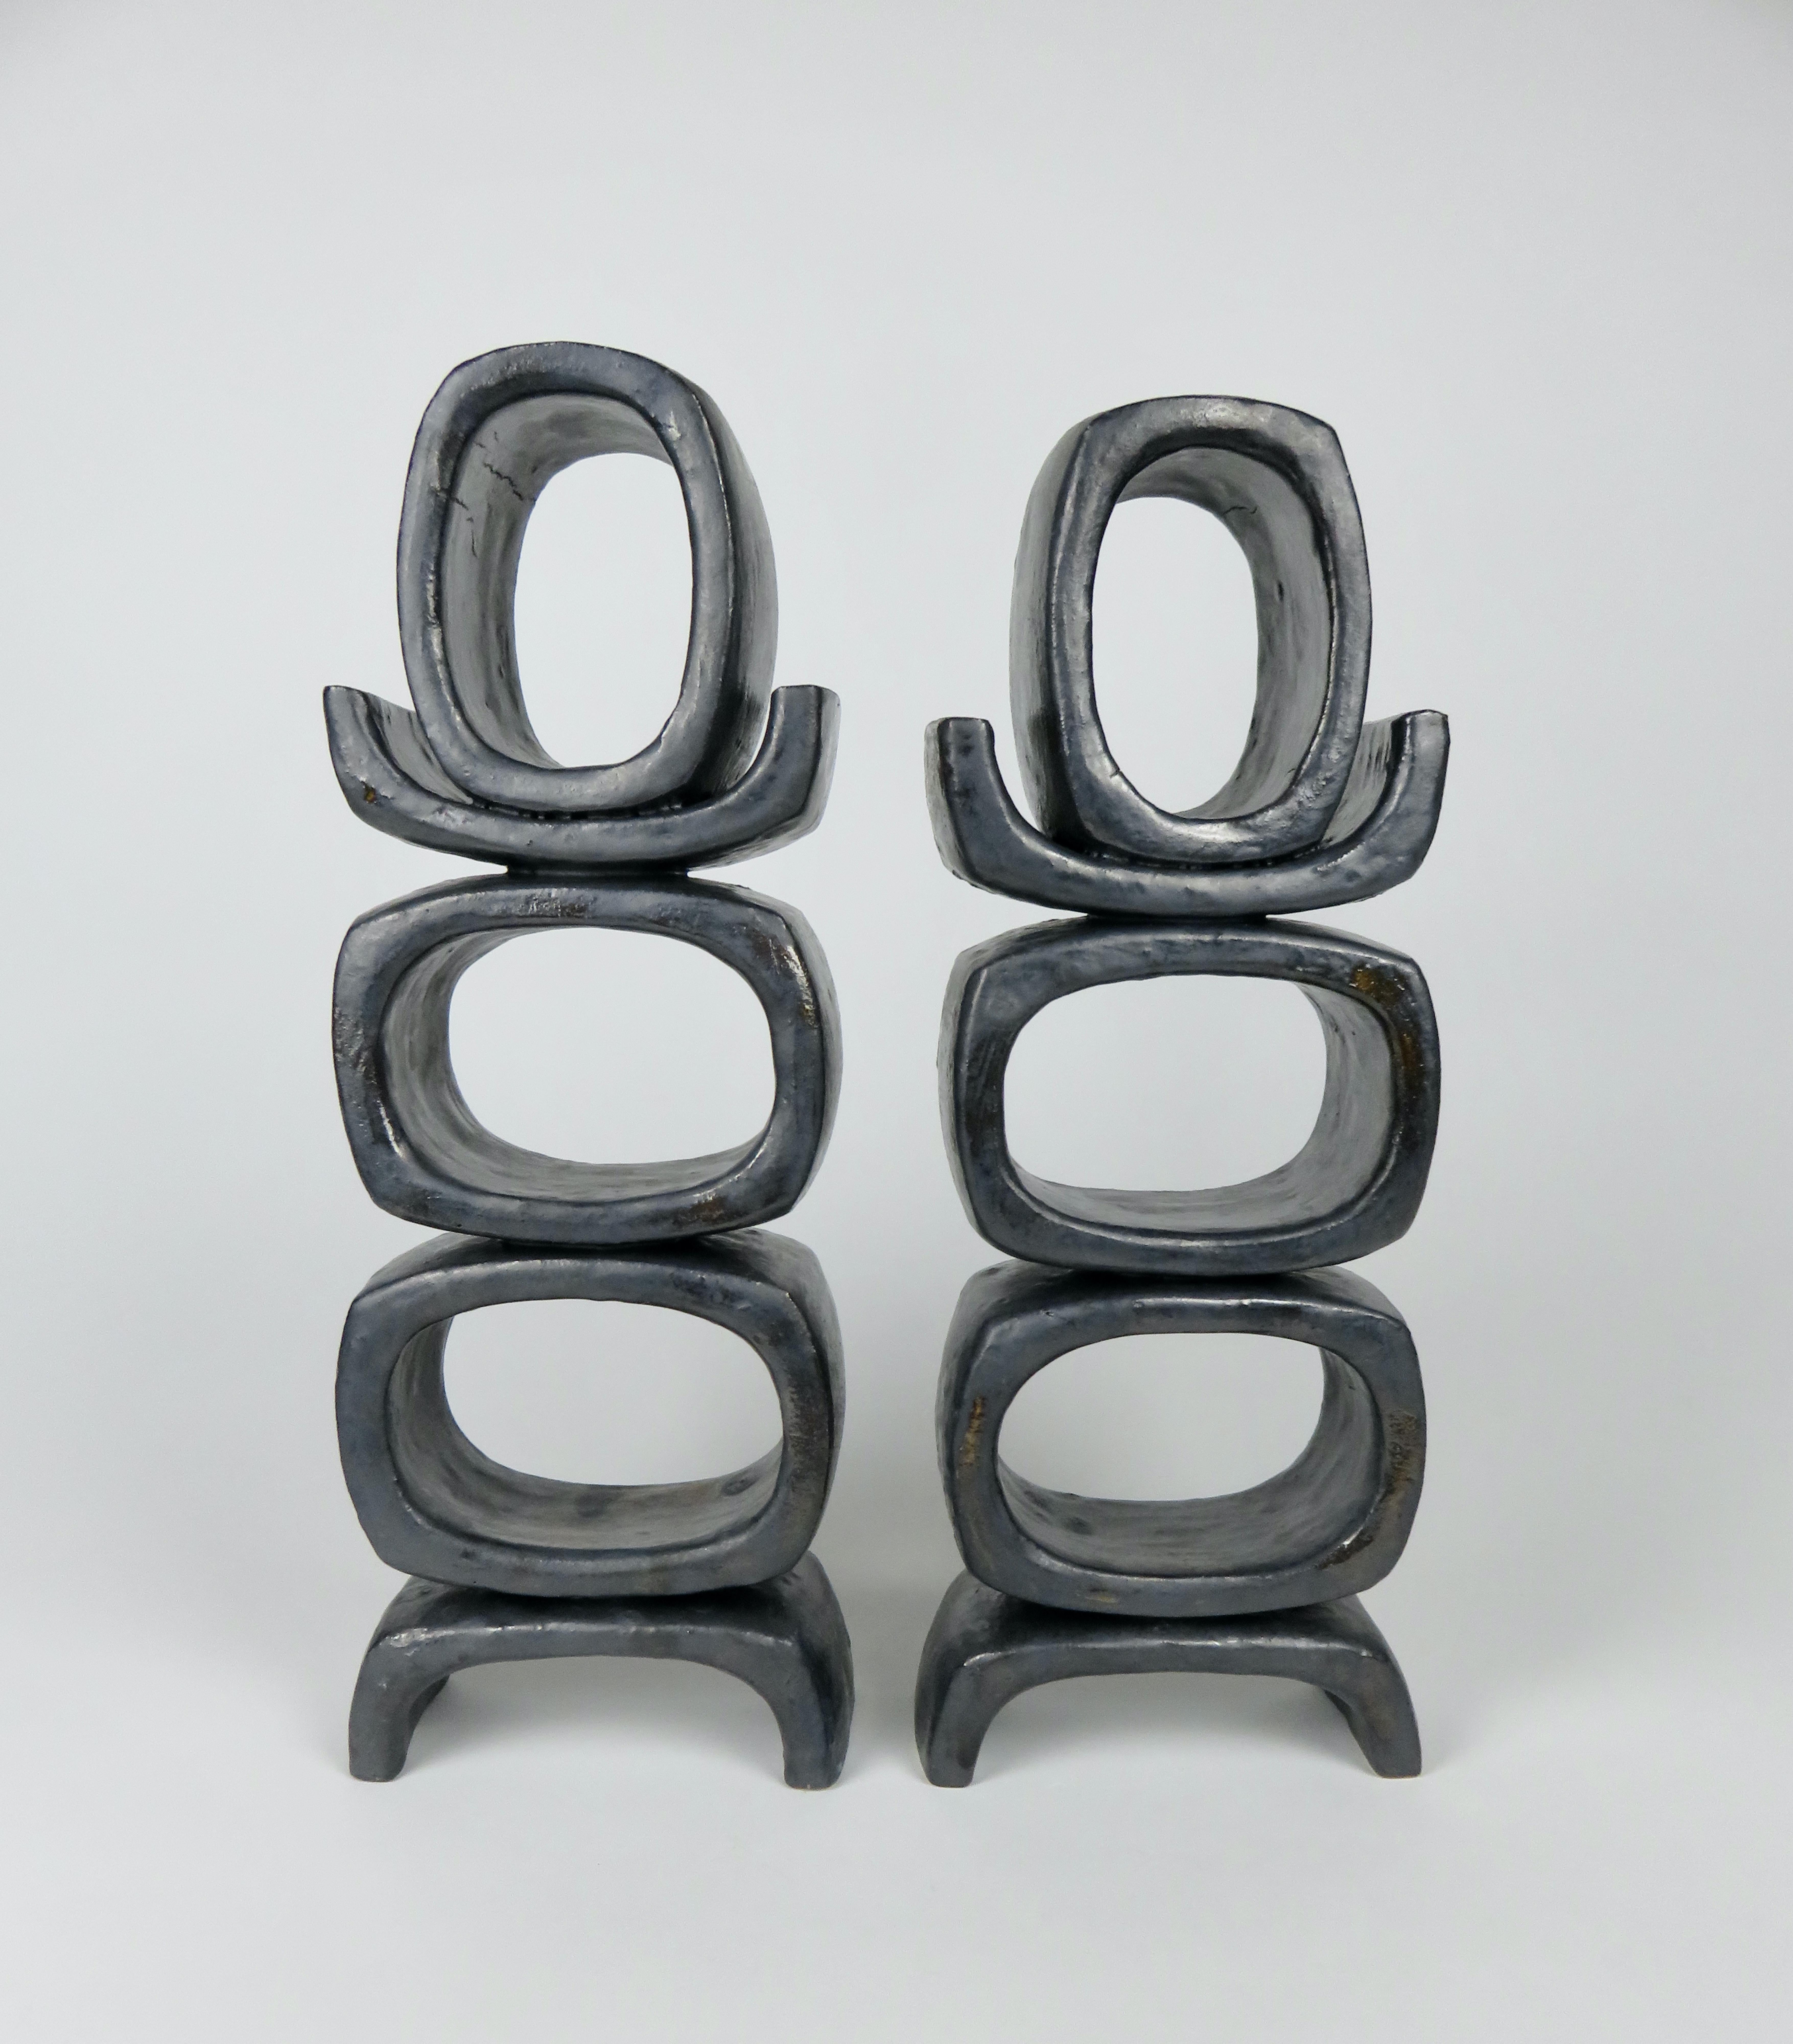 3 pieds ovales rectangulaires sur pieds angulaires courts, sculpture en argile métallique noire émaillée n° 2 en vente 2